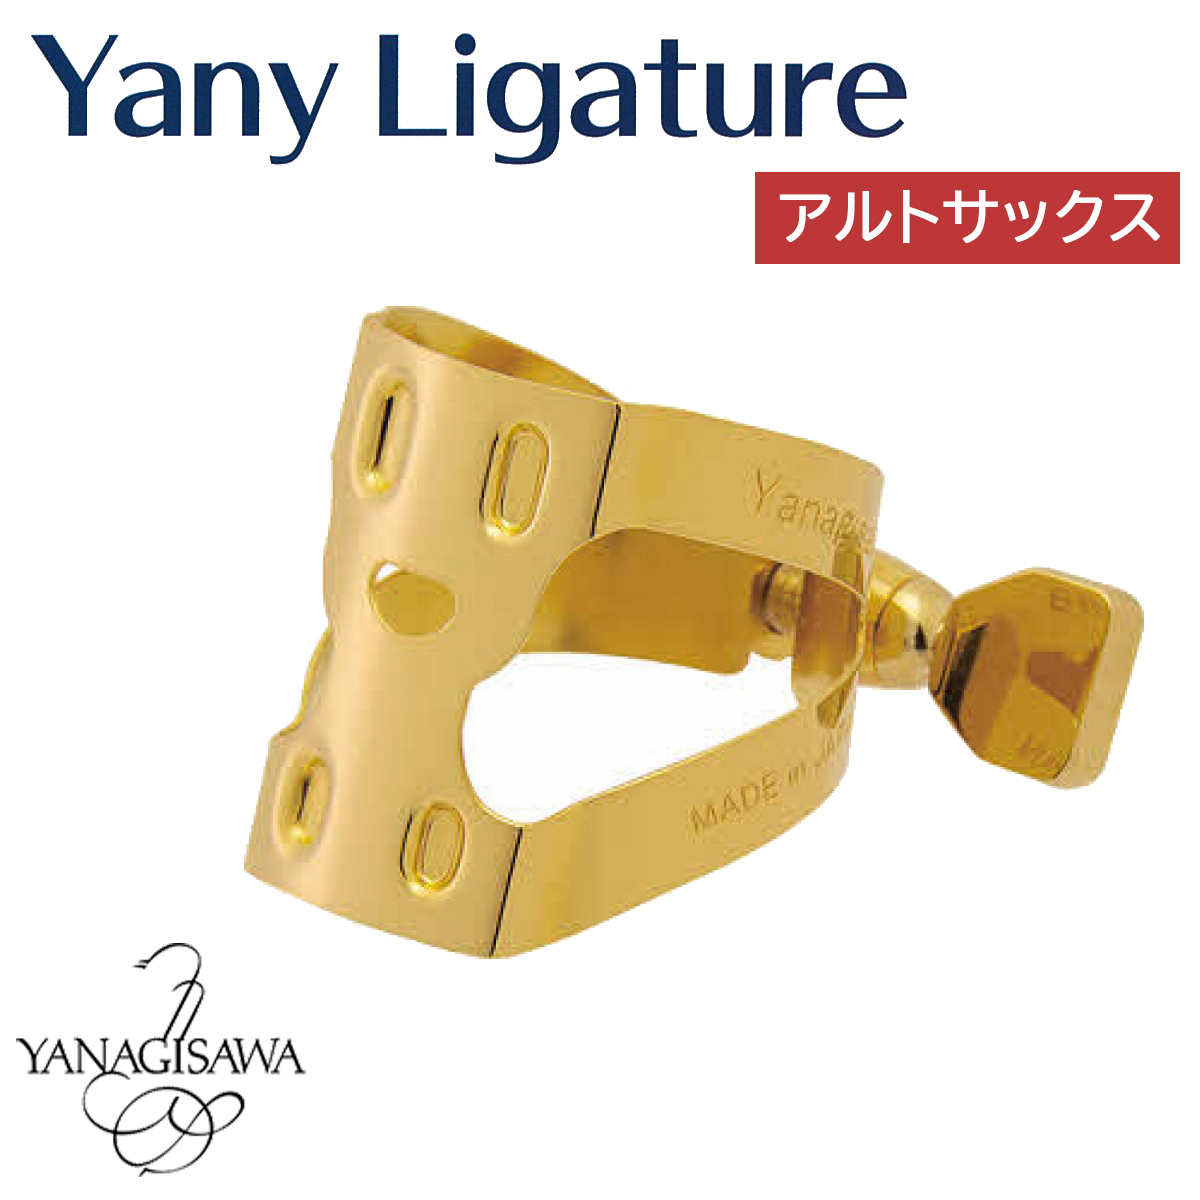 YANAGISAWA Yany Ligature アルトサックス用 ヤニー・ニコちゃん 【ヤナギサワ ヤニー・リガチャー】